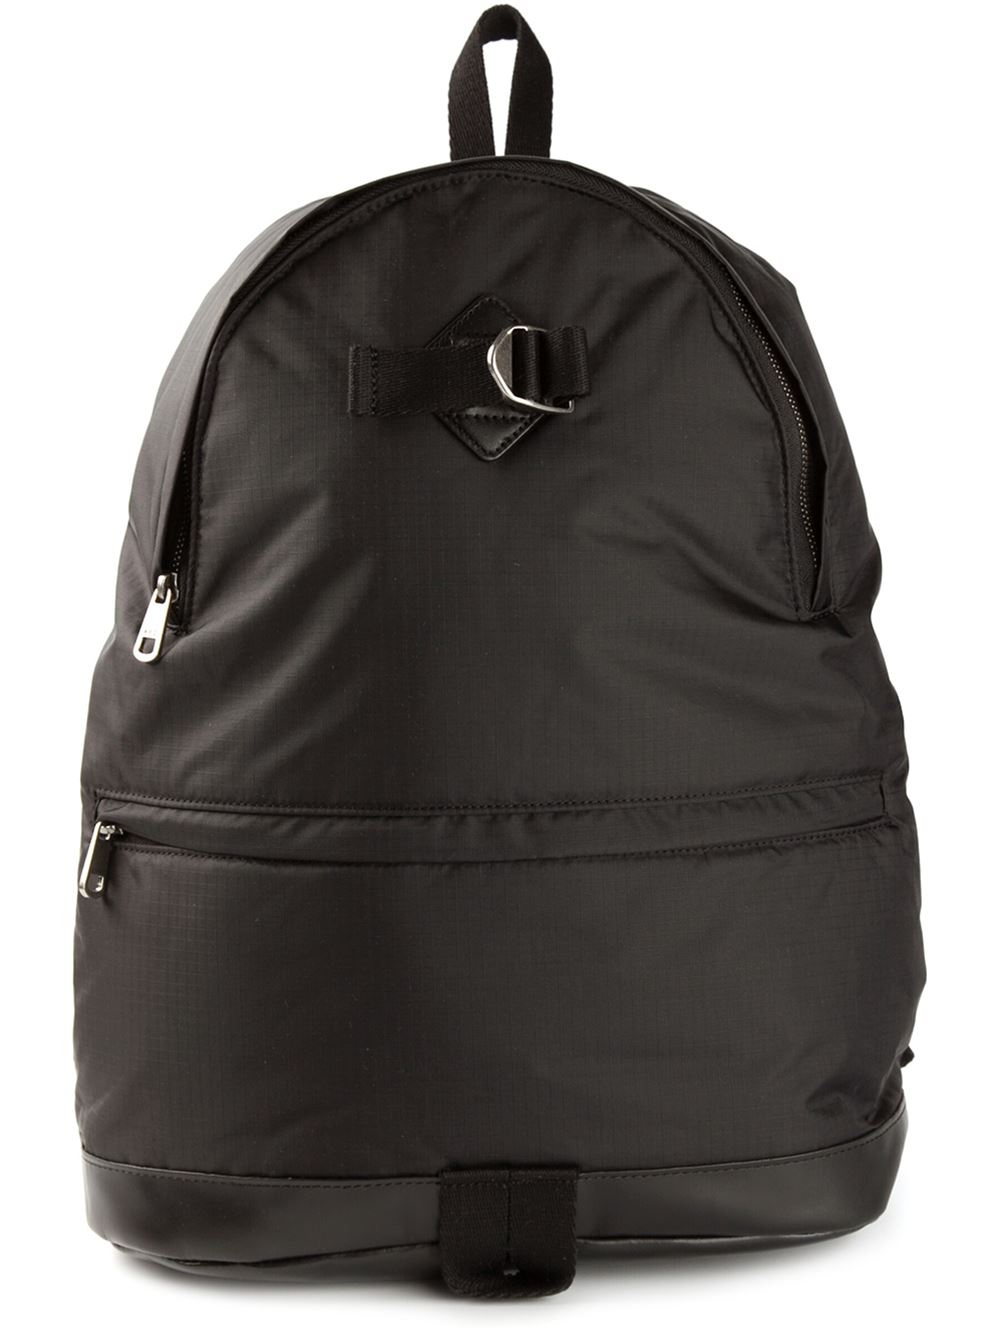 Lyst - A.P.C. Steven Backpack in Black for Men